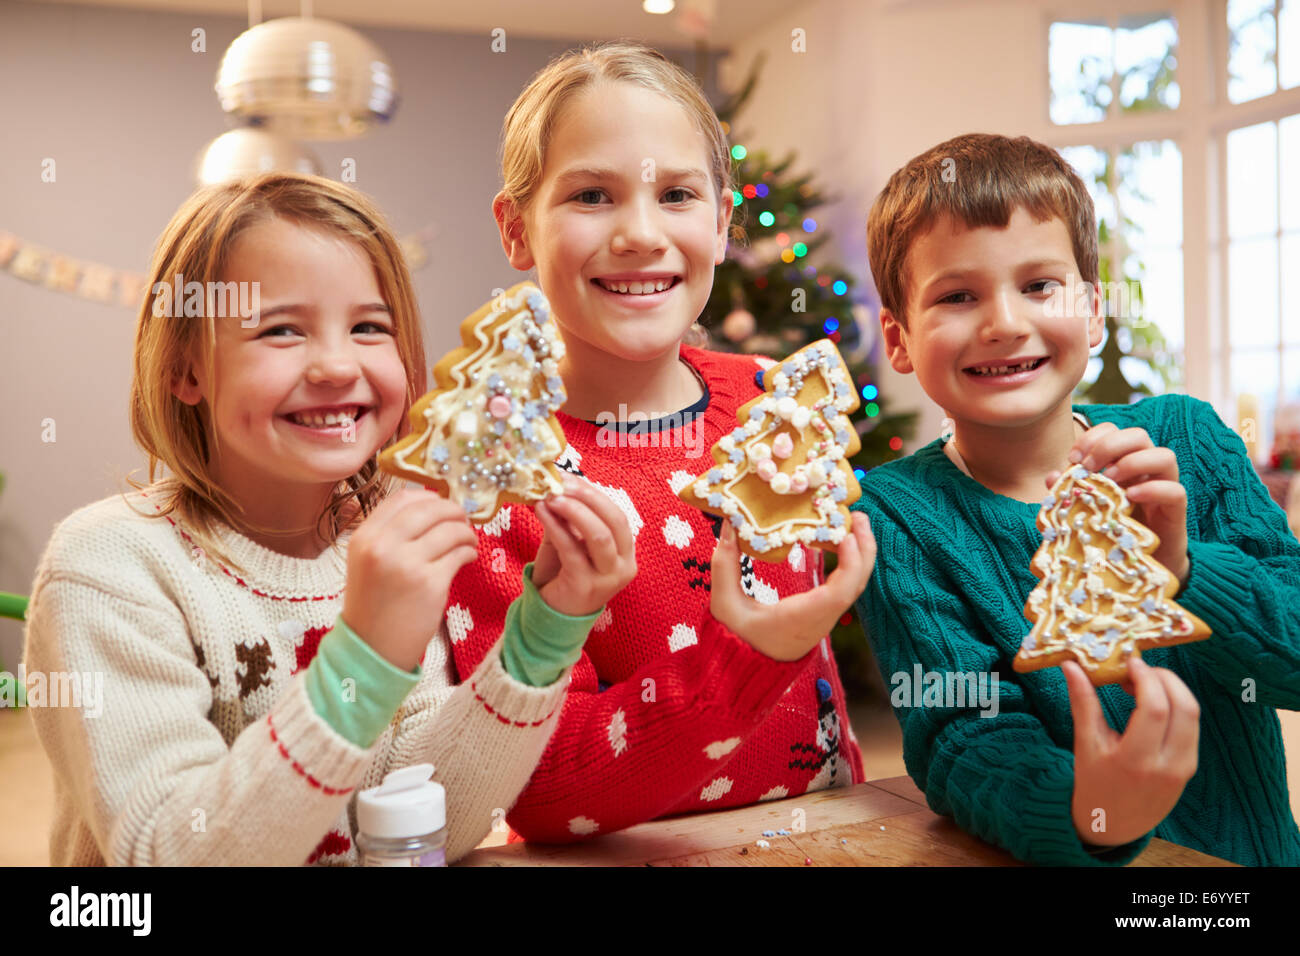 Tres niños mostrando decoradas Galletas de Navidad Foto de stock